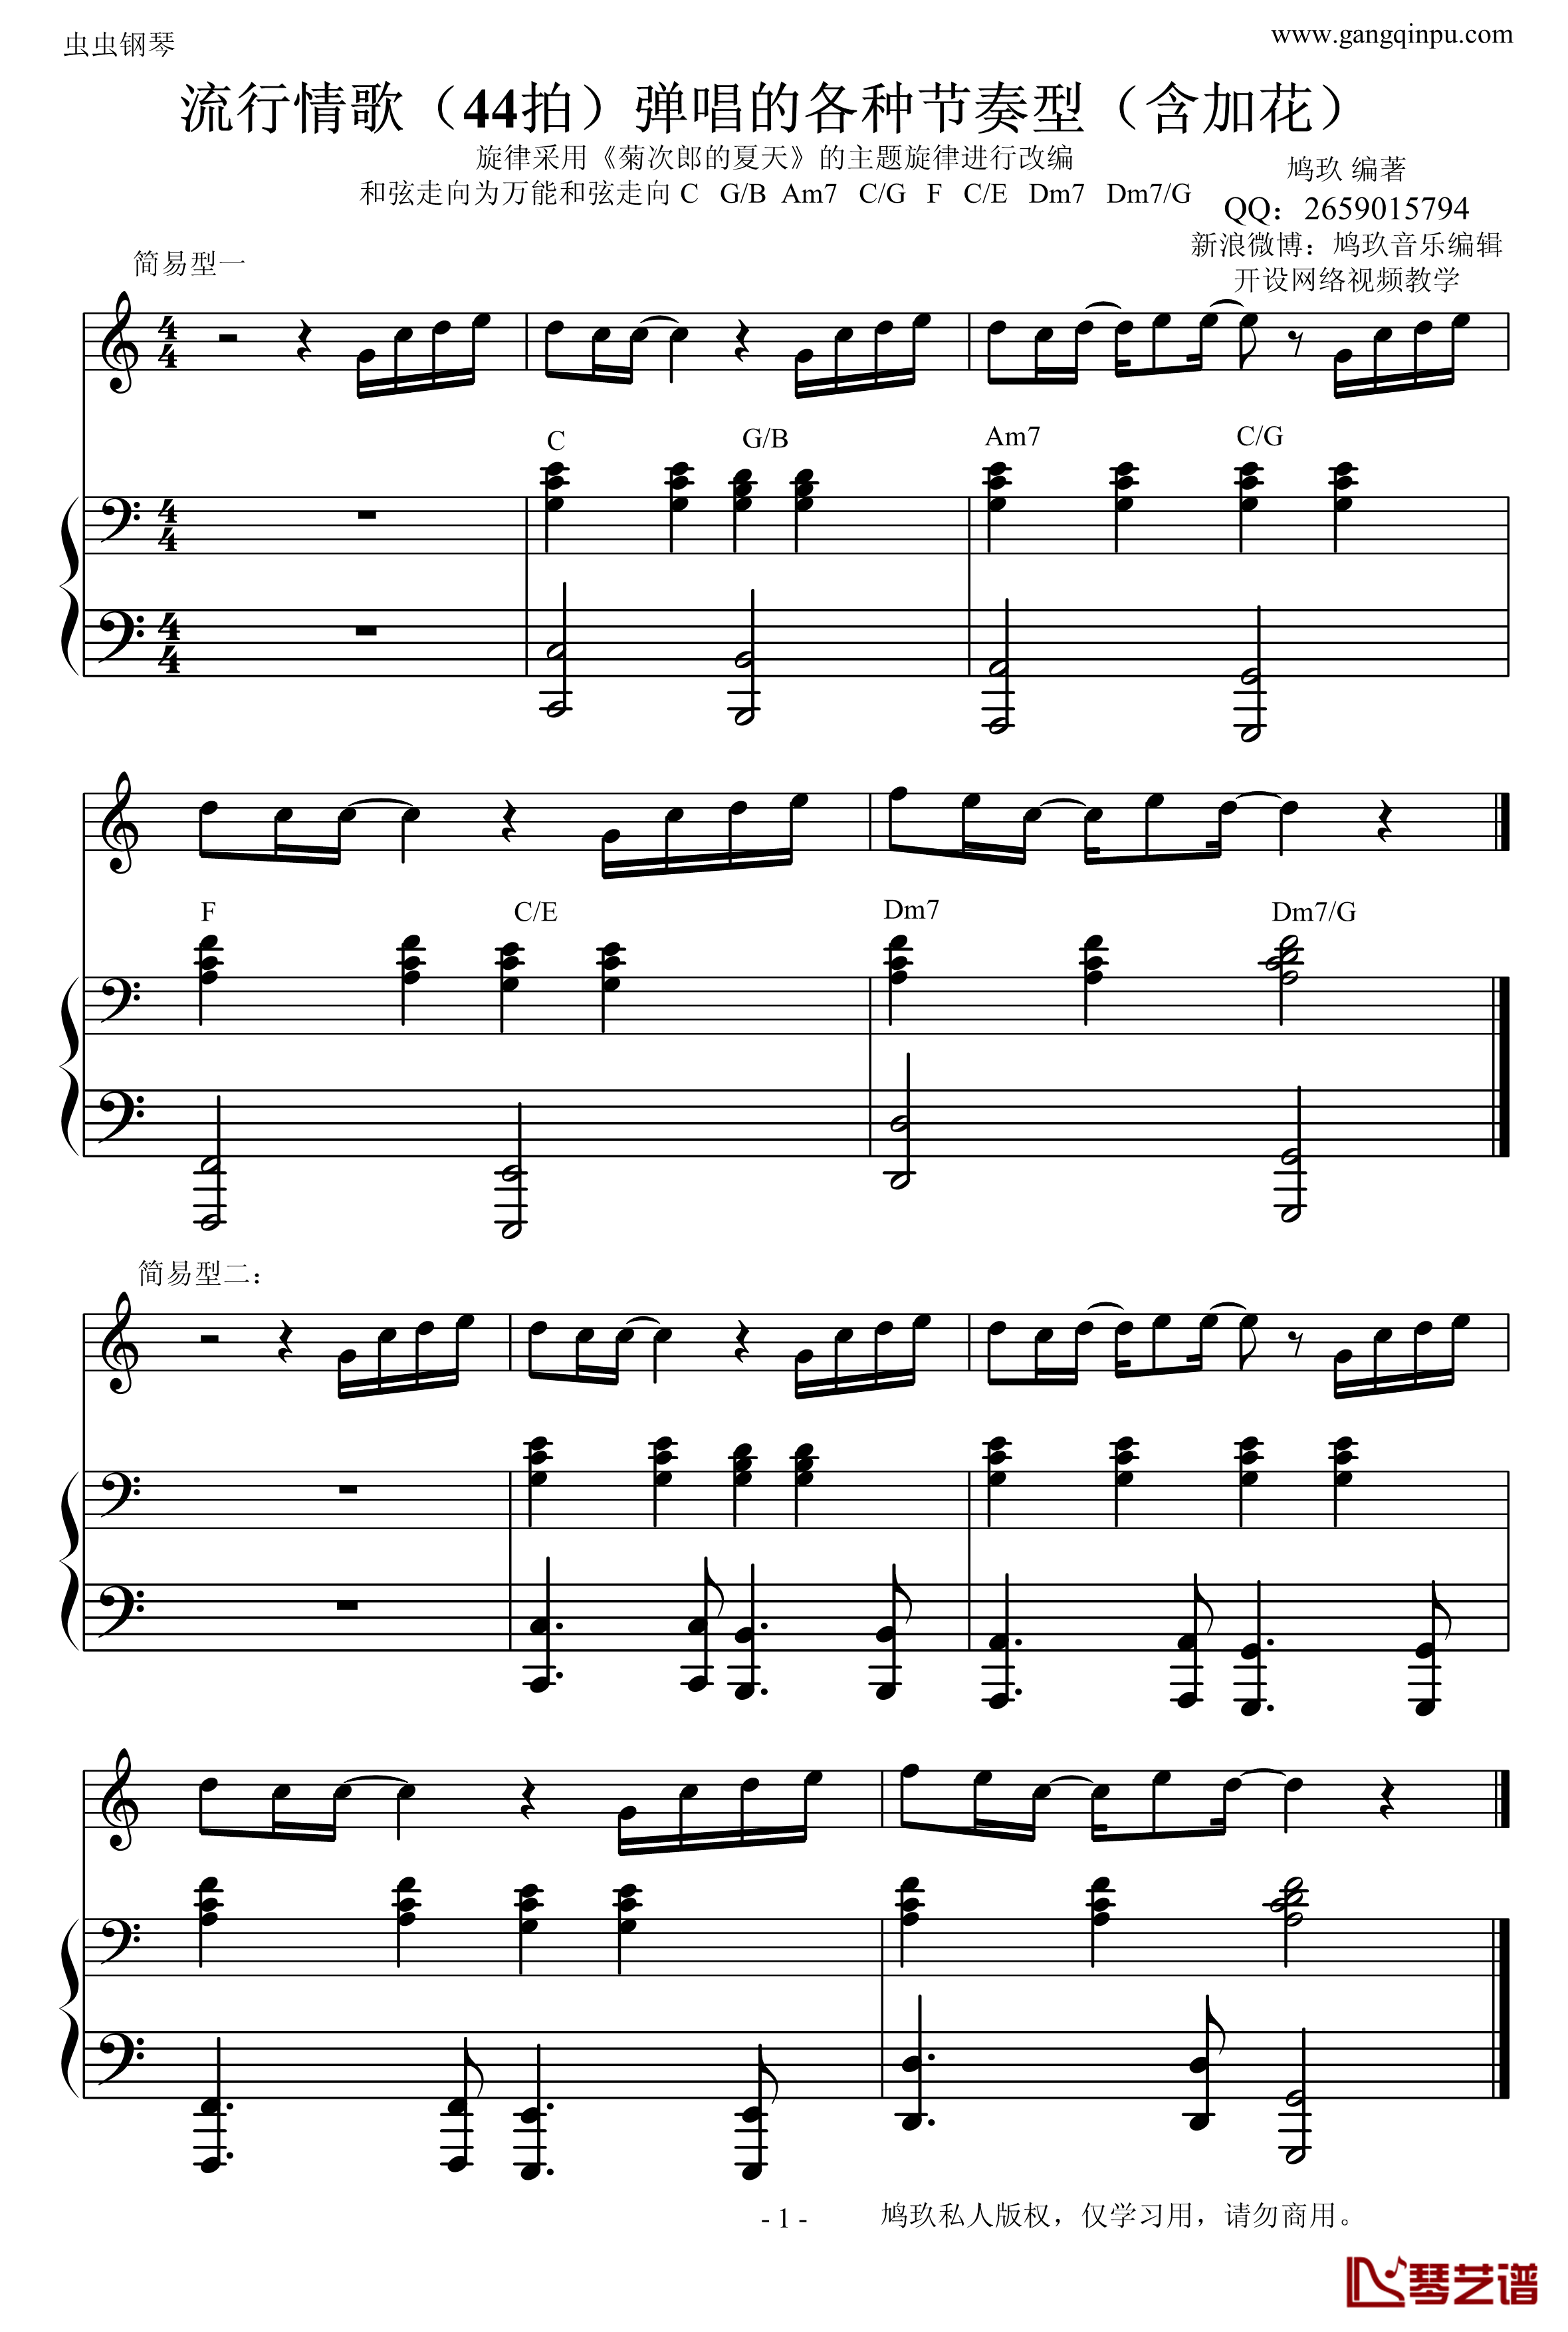 菊次郎的夏天钢琴谱-改编的-示范钢琴弹唱的常见伴奏型久石让